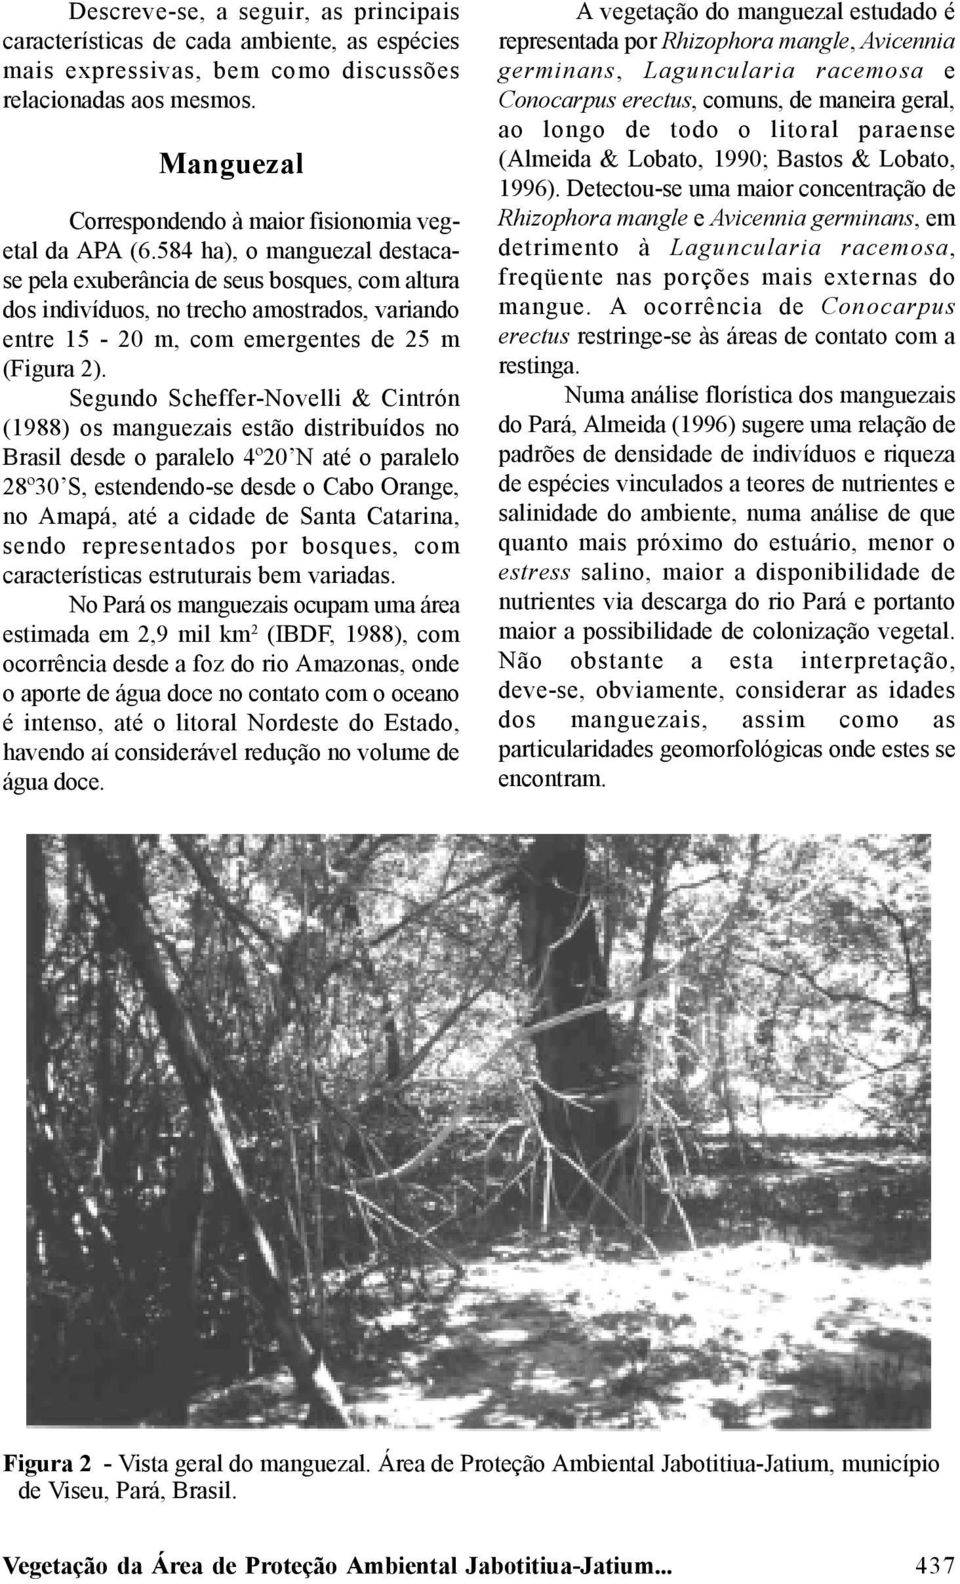 584 ha), o manguezal destacase pela exuberância de seus bosques, com altura dos indivíduos, no trecho amostrados, variando entre 15-20 m, com emergentes de 25 m (Figura 2).